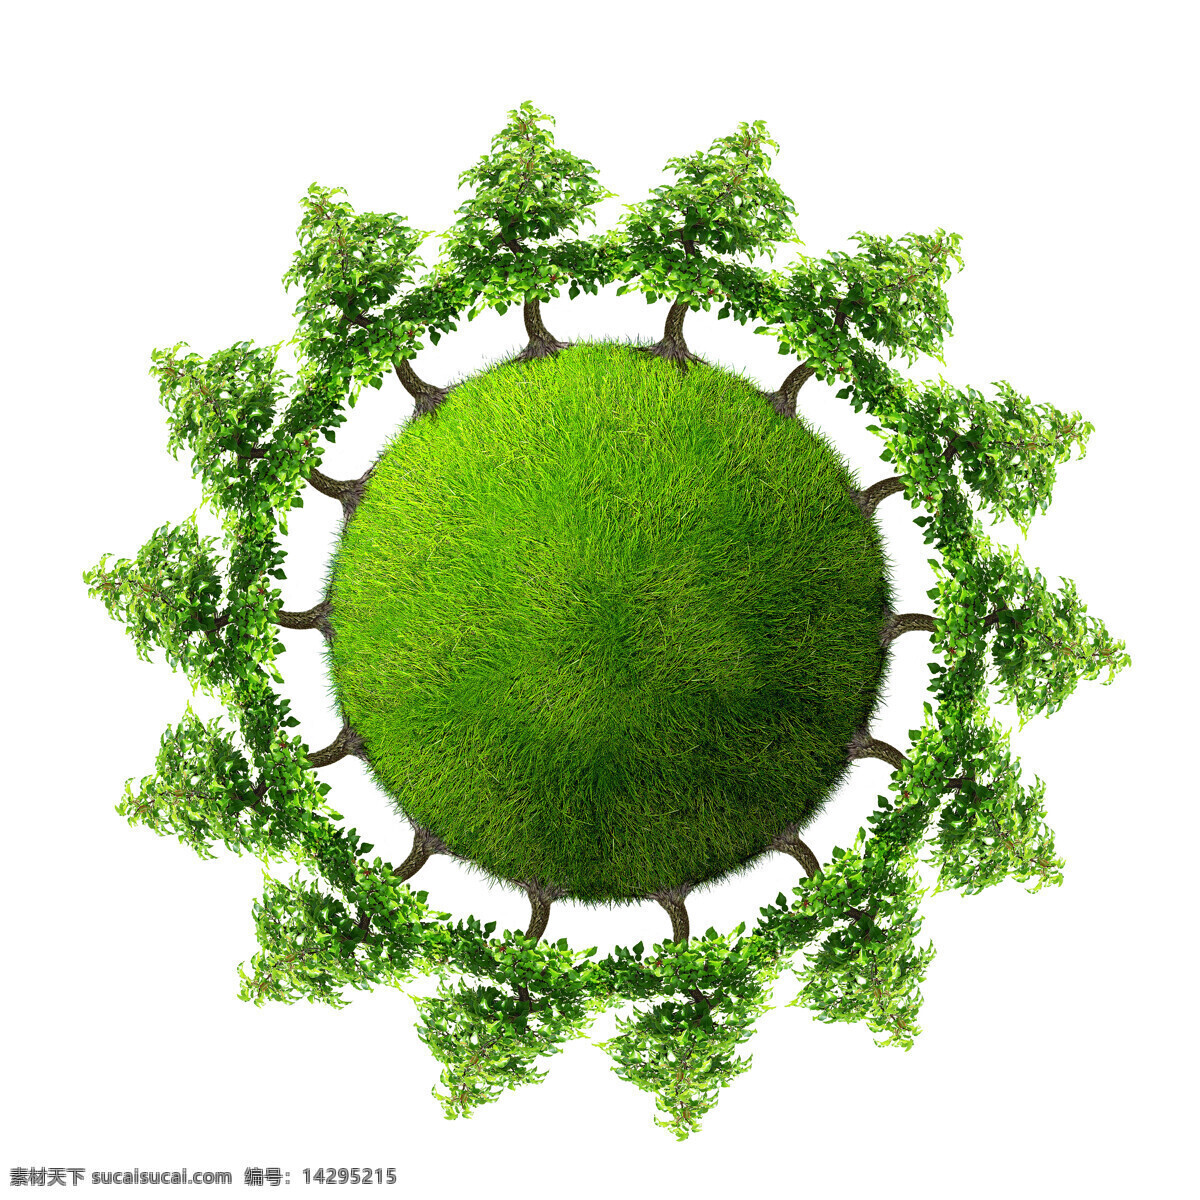 地球 创意 主题 高清 二 草地 城市 环保 建筑 绿地 绿色 树 矢量图 其他矢量图